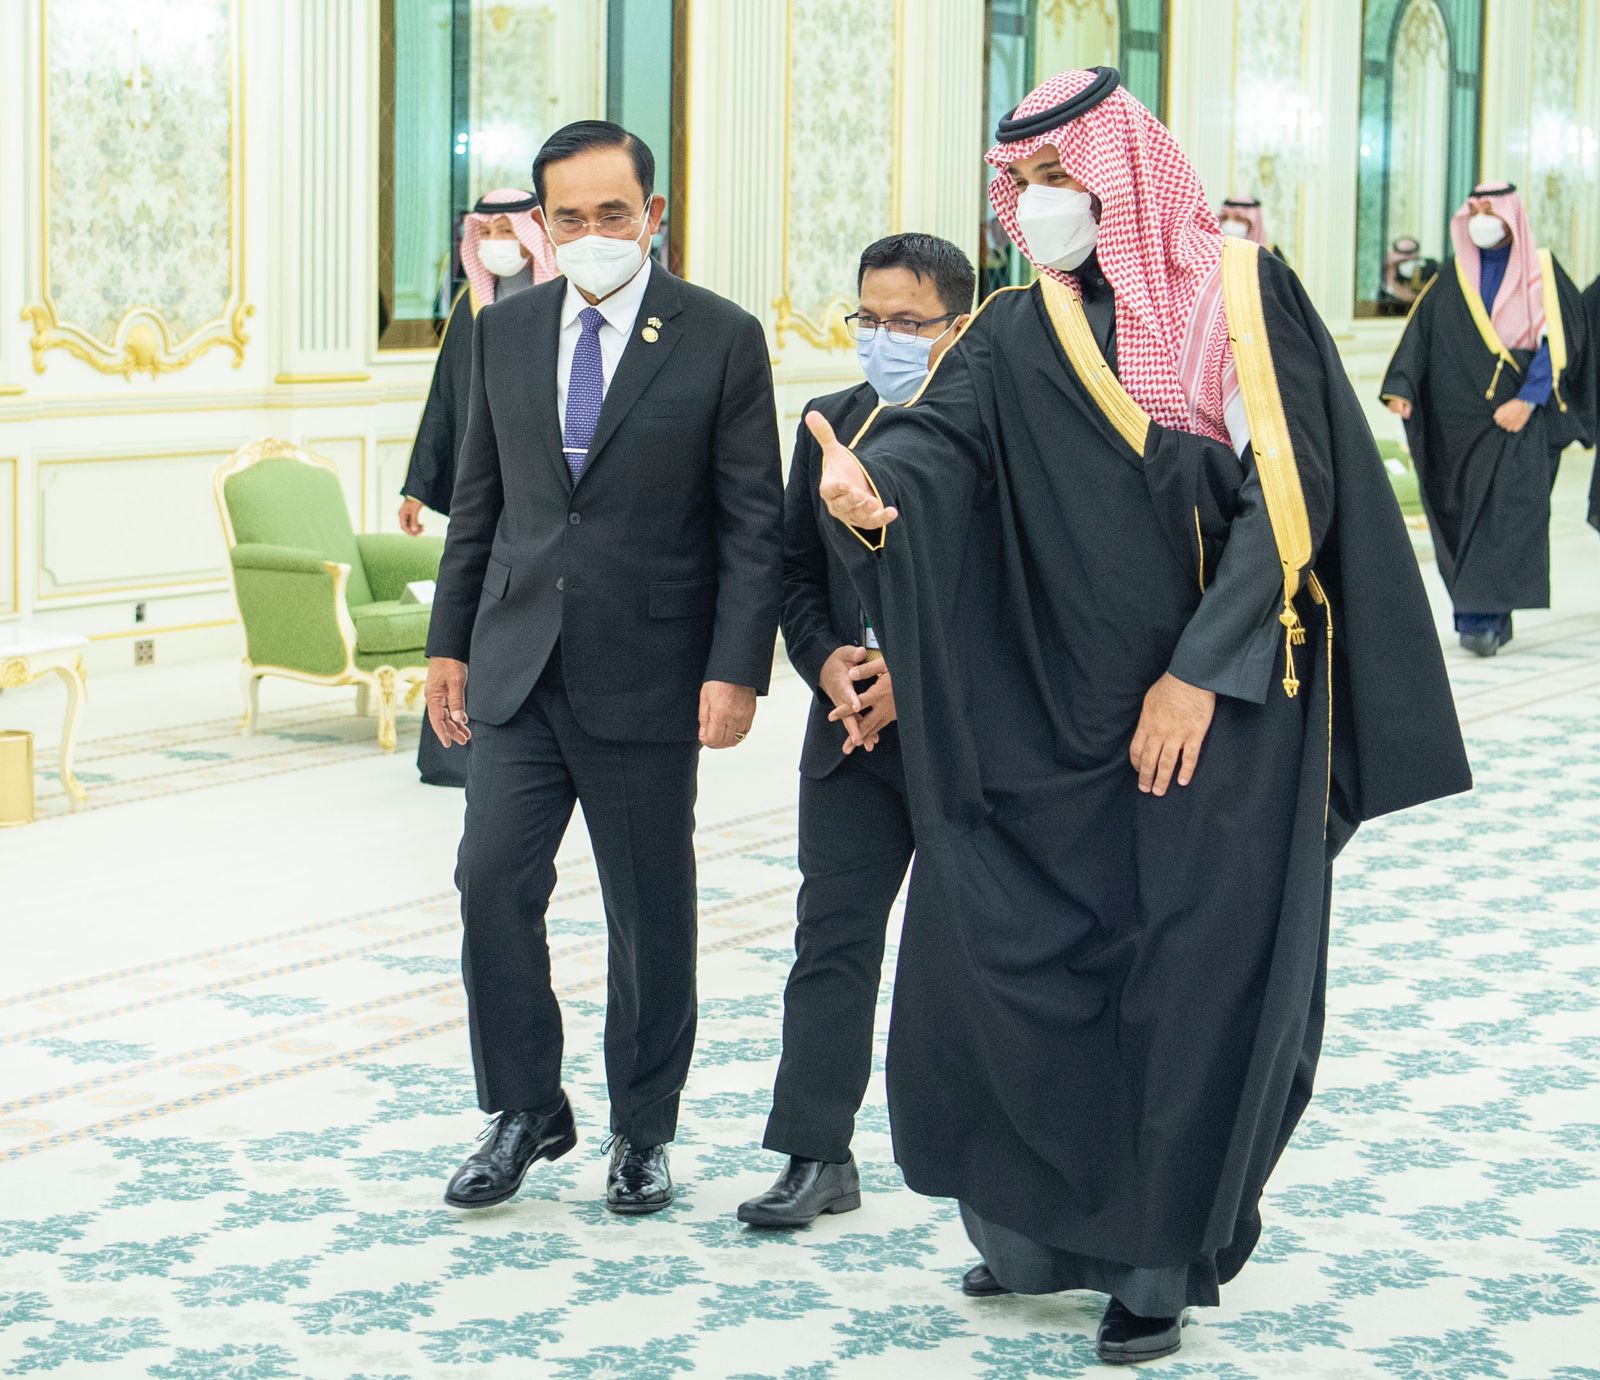 دعوة محمد بن سلمان تفتح صفحة جديدة من العلاقات السعودية التايلندية